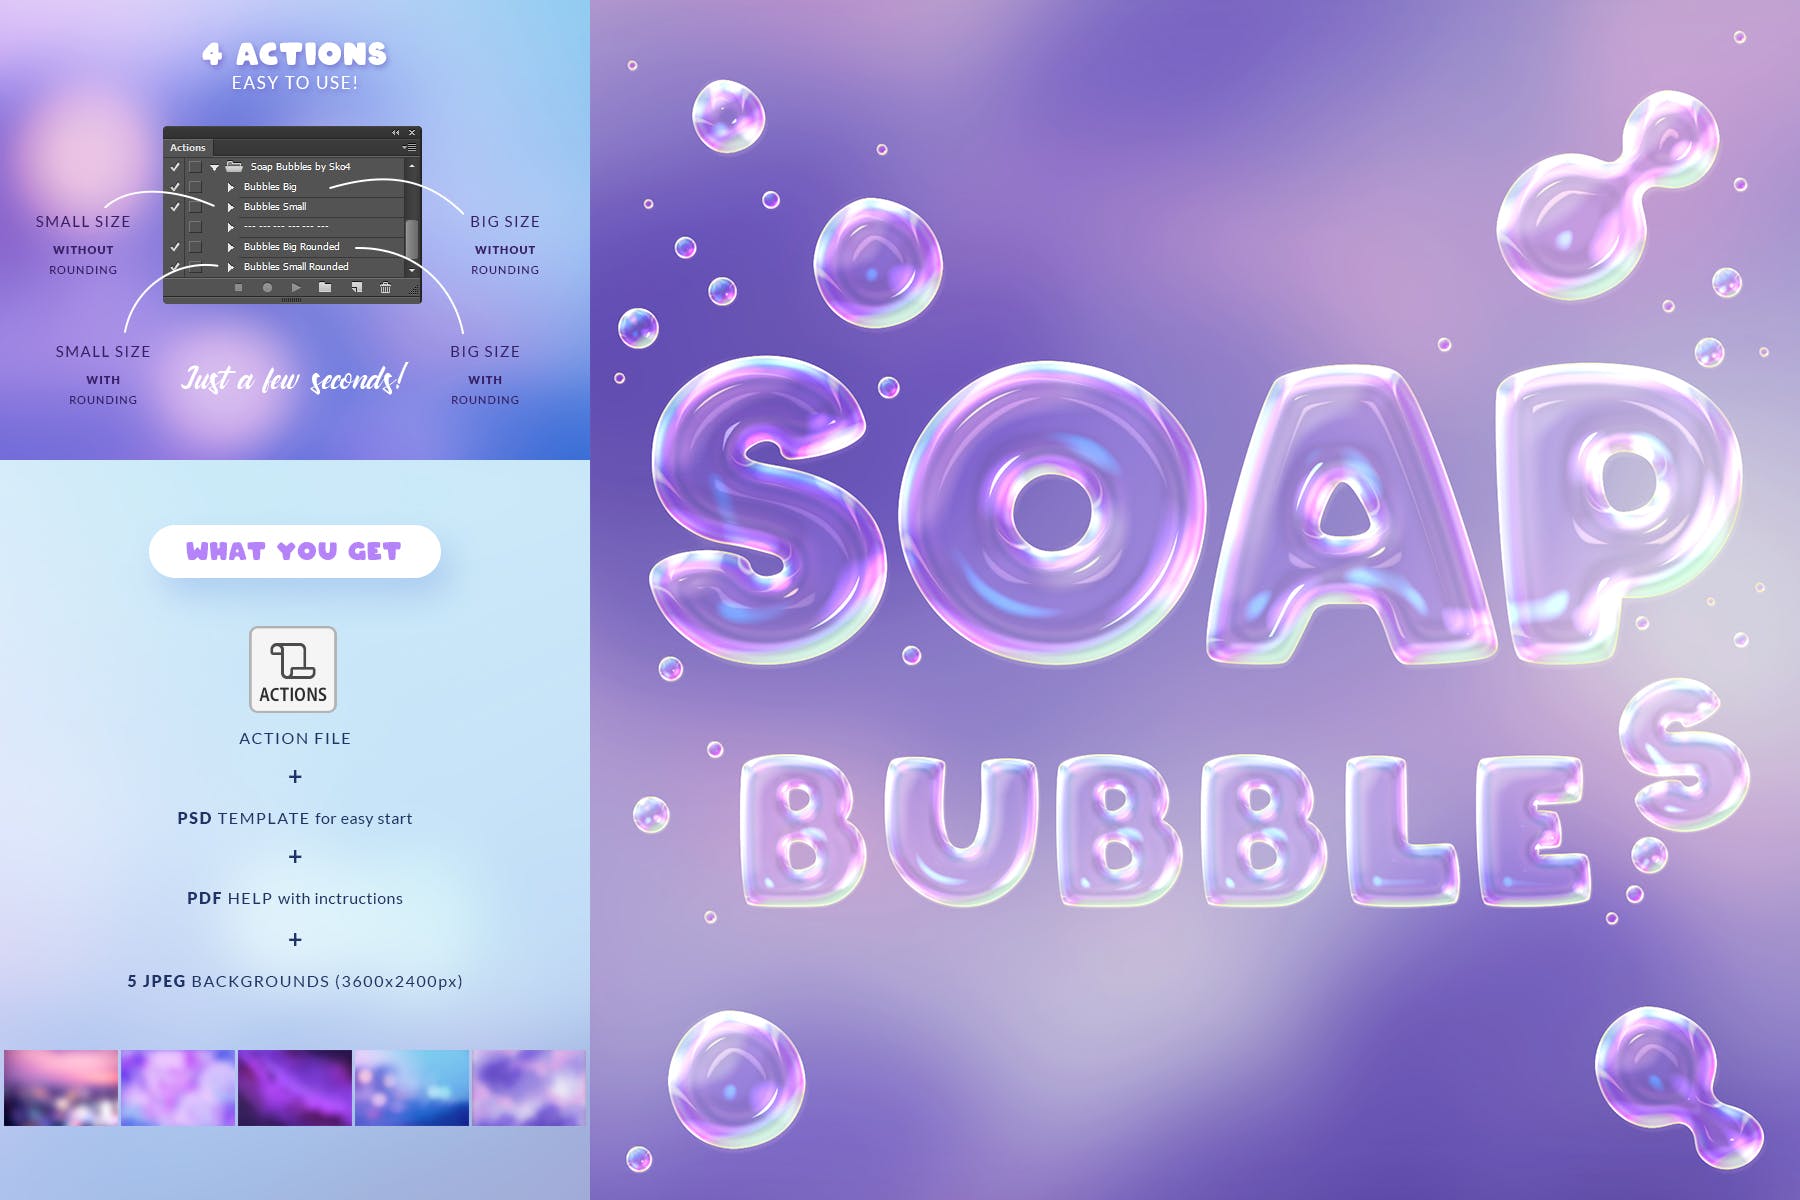 肥皂泡文字特效16设计素材网精选PS动作 Soap Bubbles Photoshop Action插图(2)